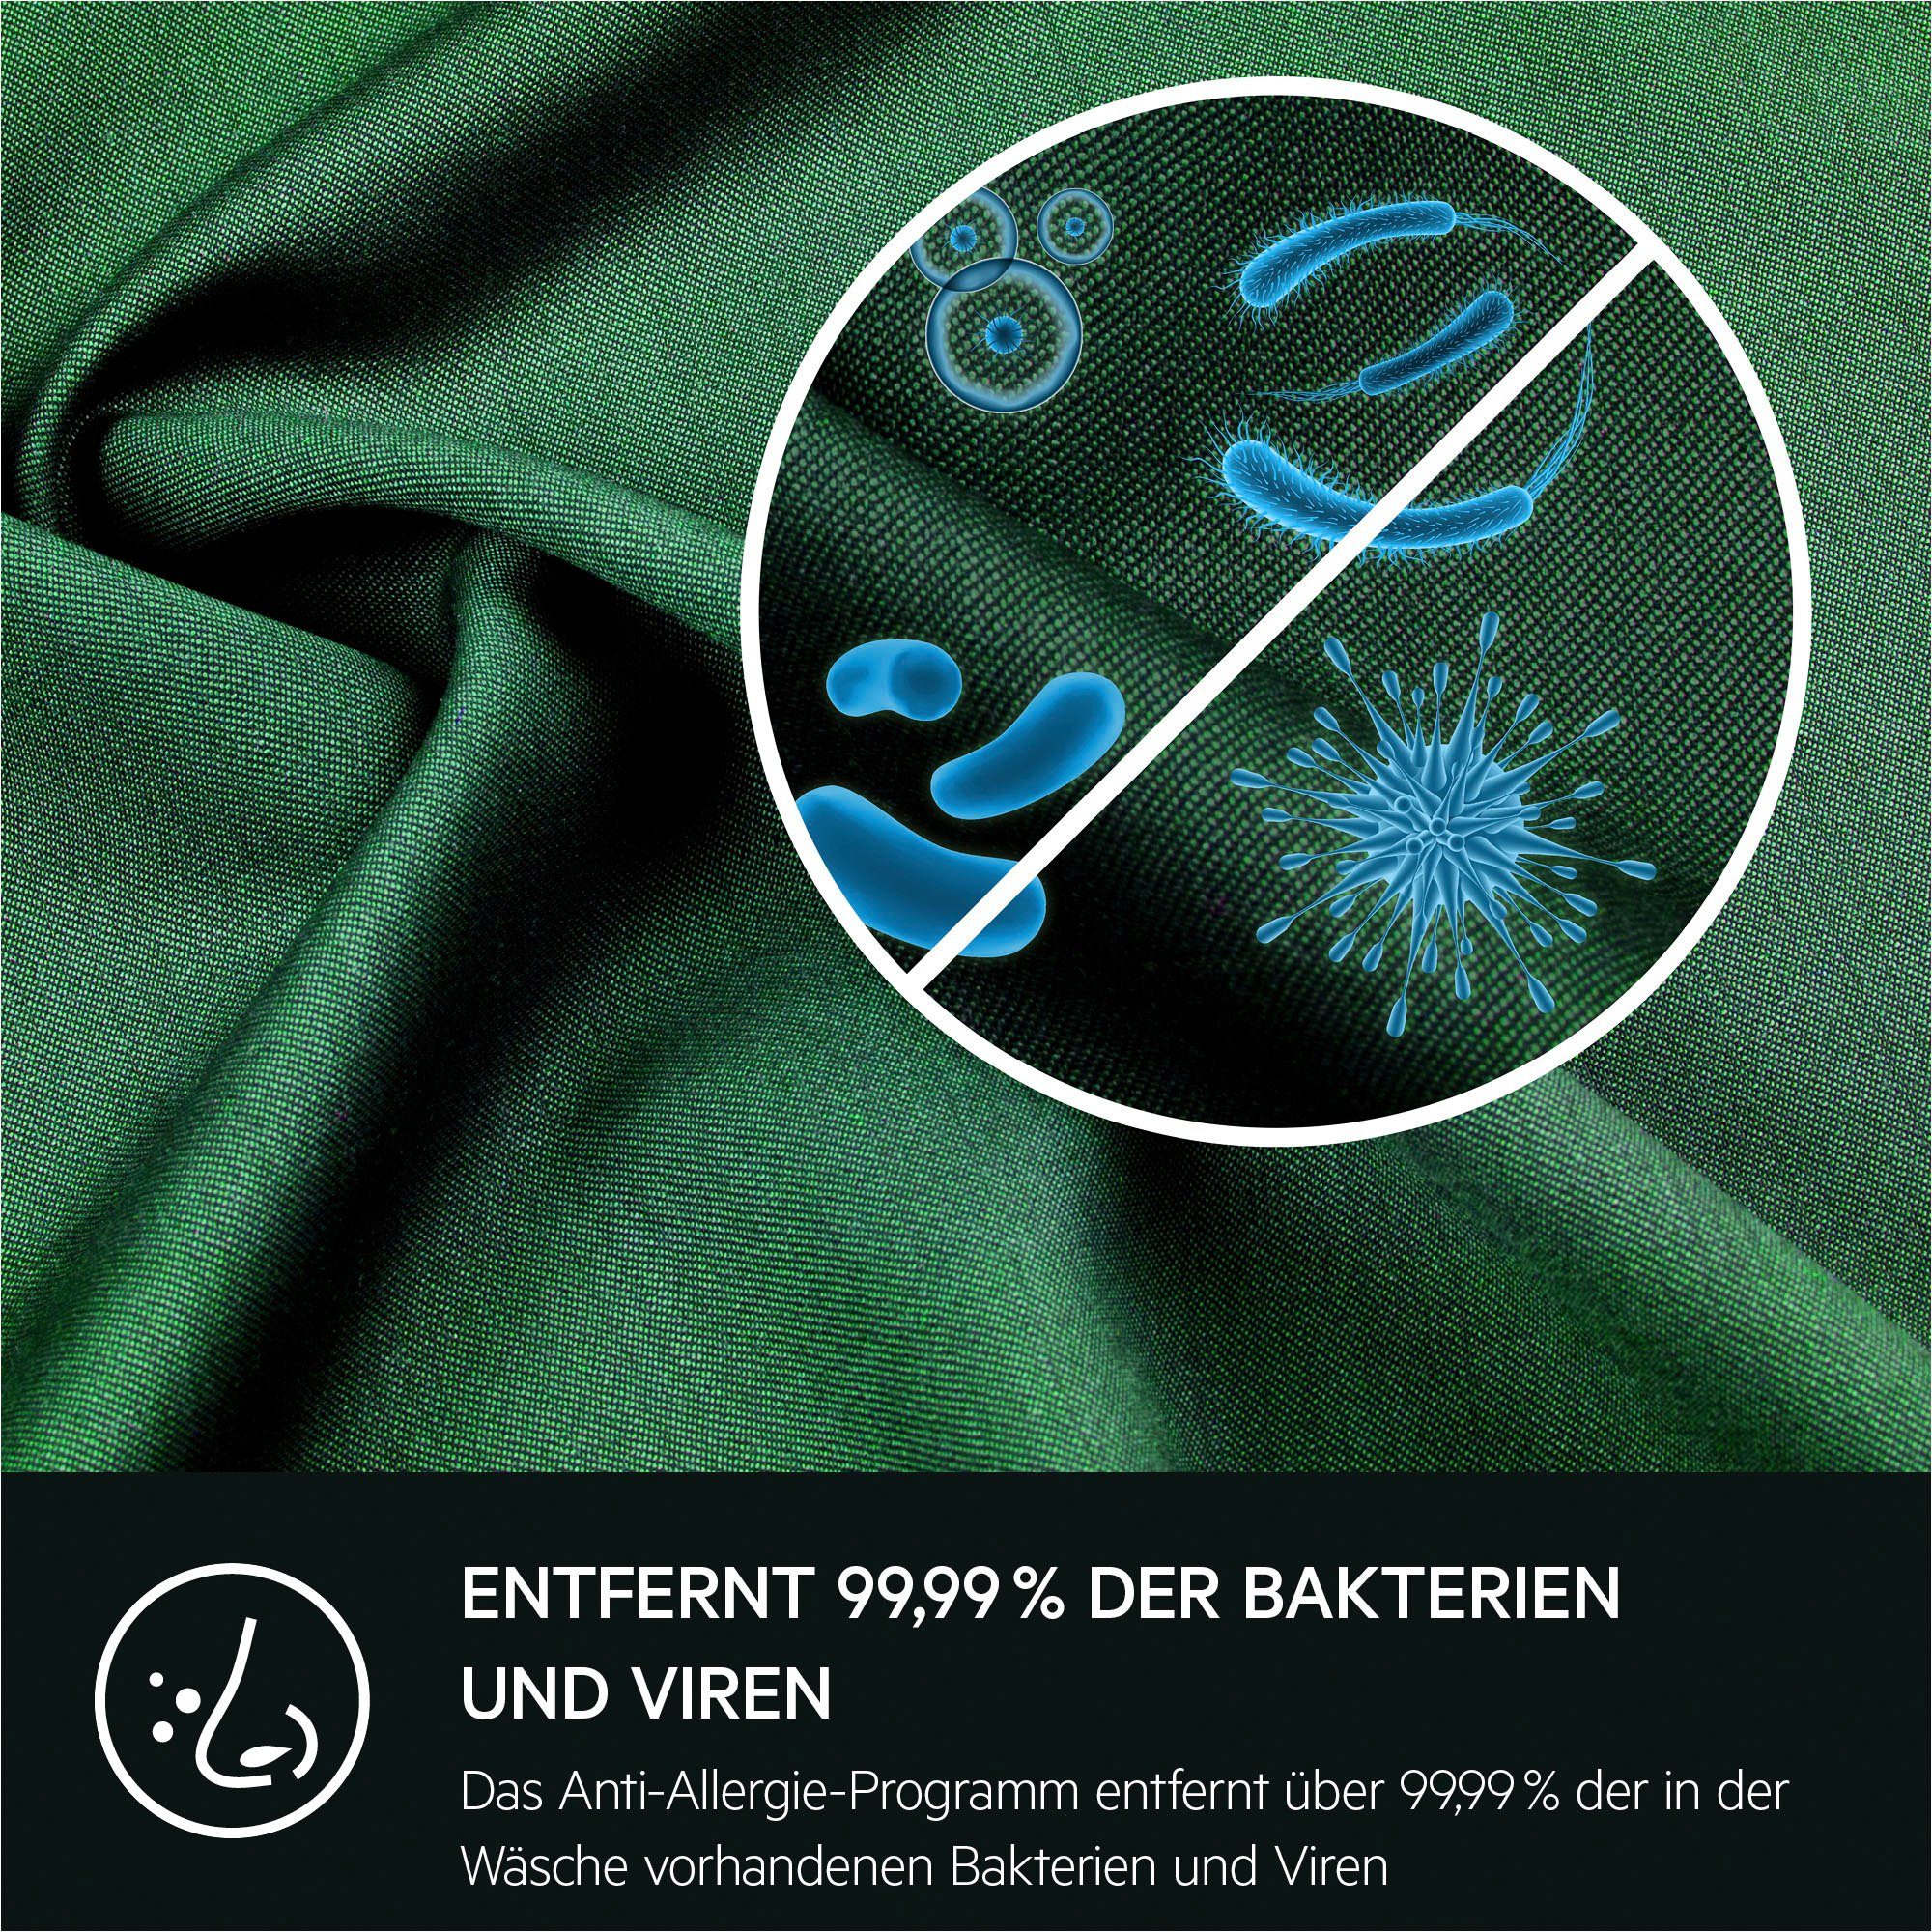 914913590, L6FBA51480 Anti-Allergie 8 mit Programm kg, AEG Hygiene-/ Dampf Waschmaschine U/min, 1400